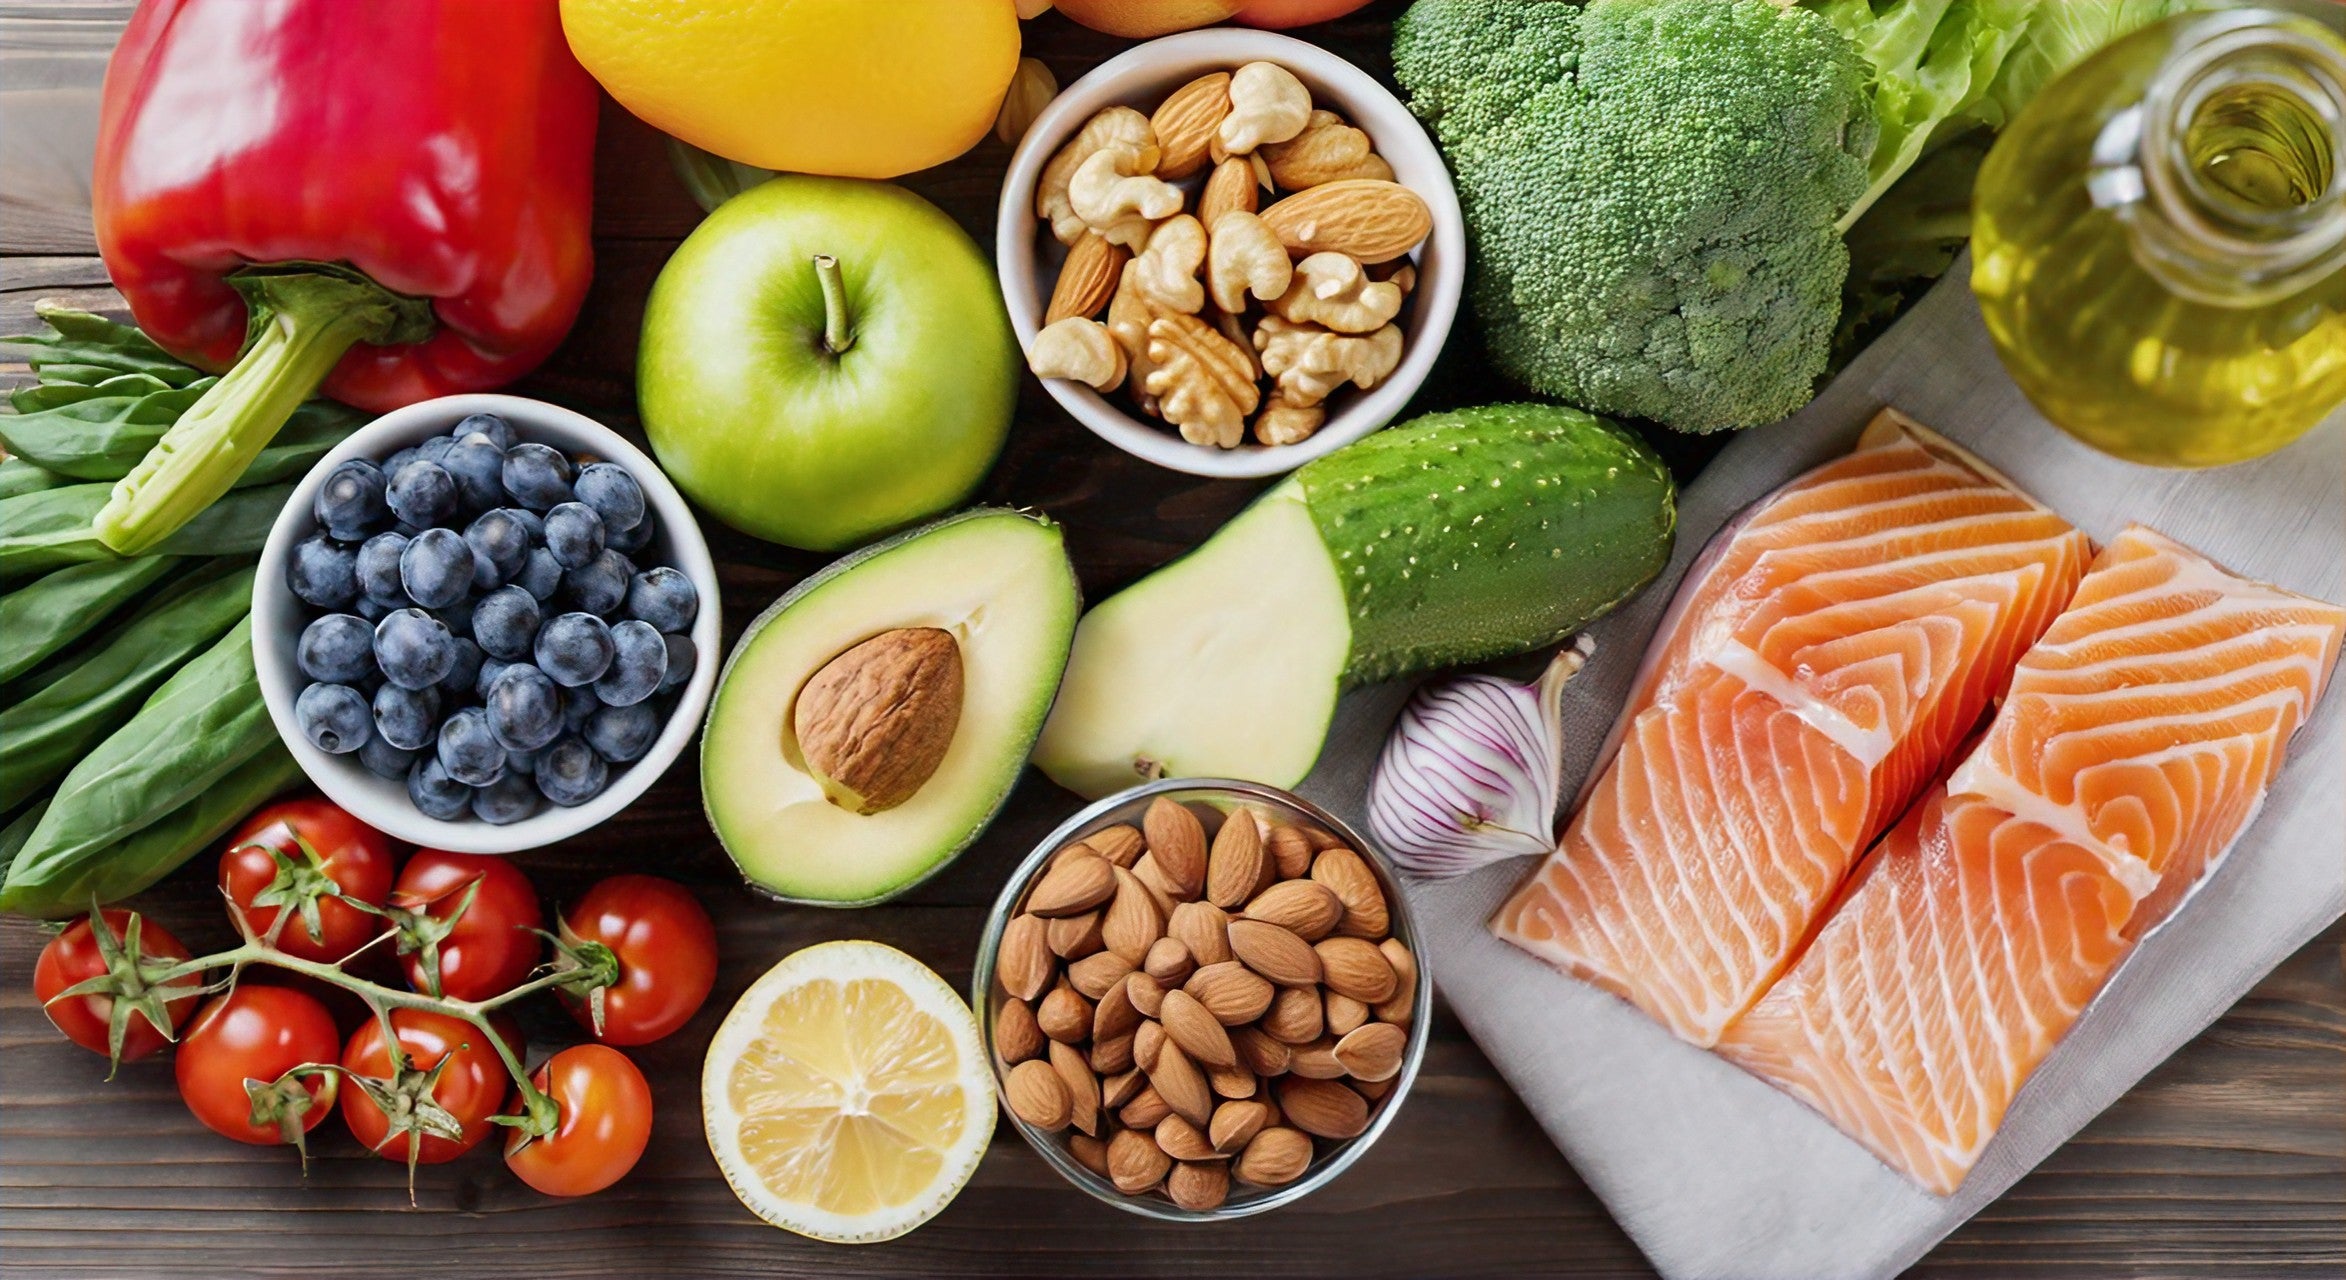 Assortiment de 10 aliments essentiels pour athlètes, incluant bananes, amandes, saumon, et épinards, pour une nutrition sportive optimale.